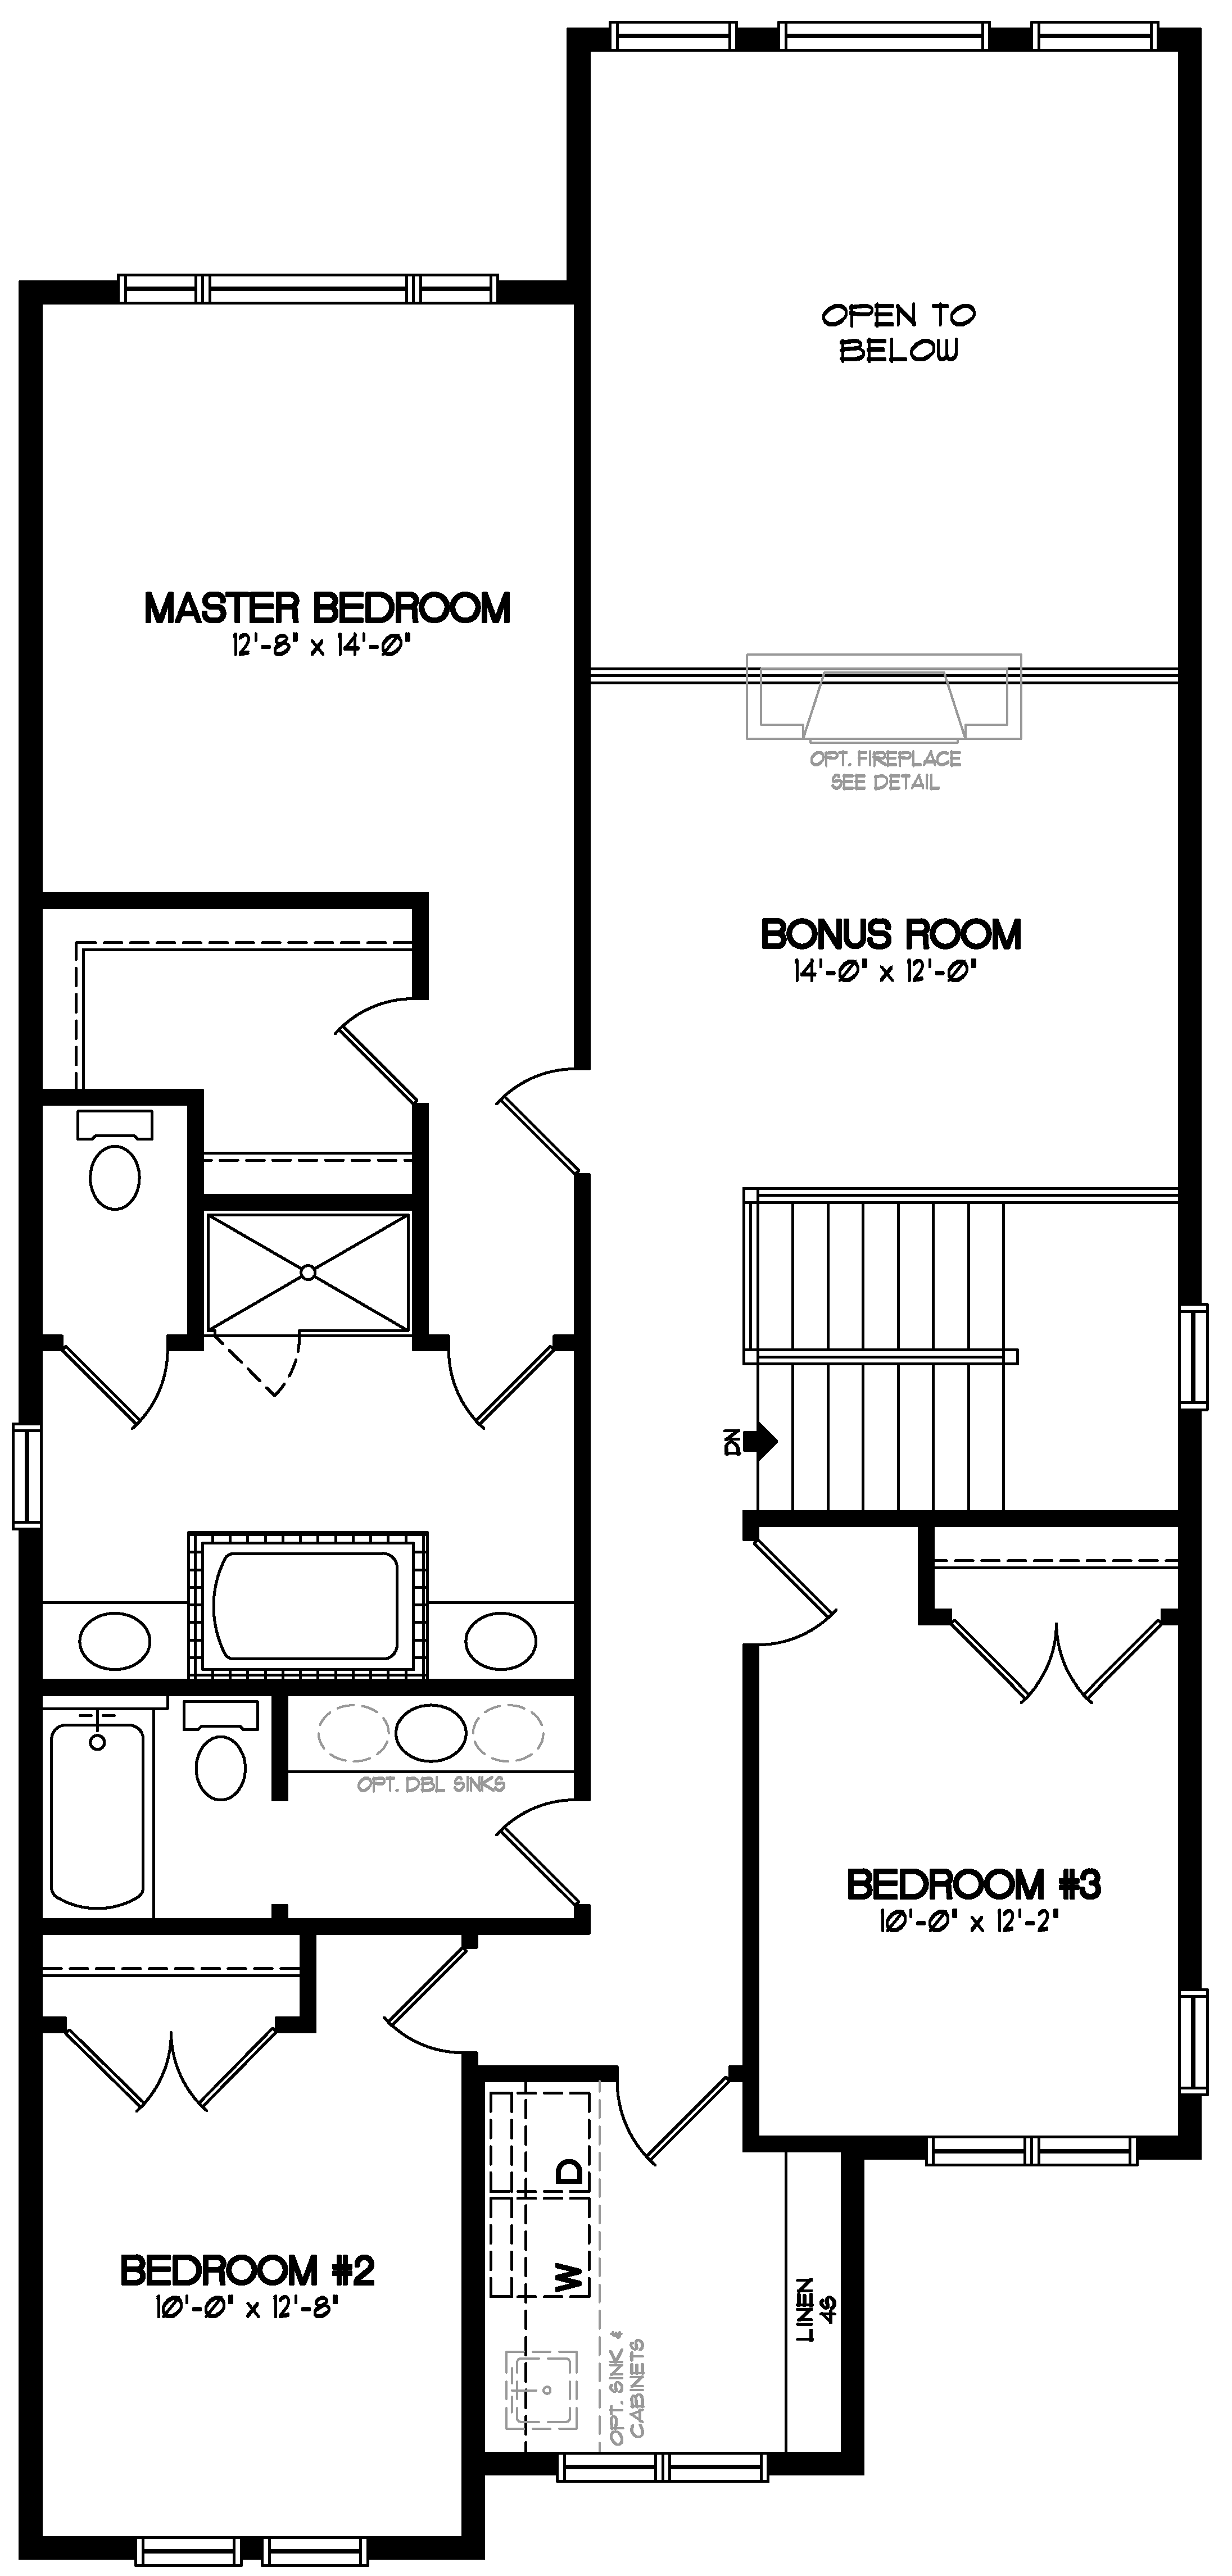 Leighton Home Model Floor Plans